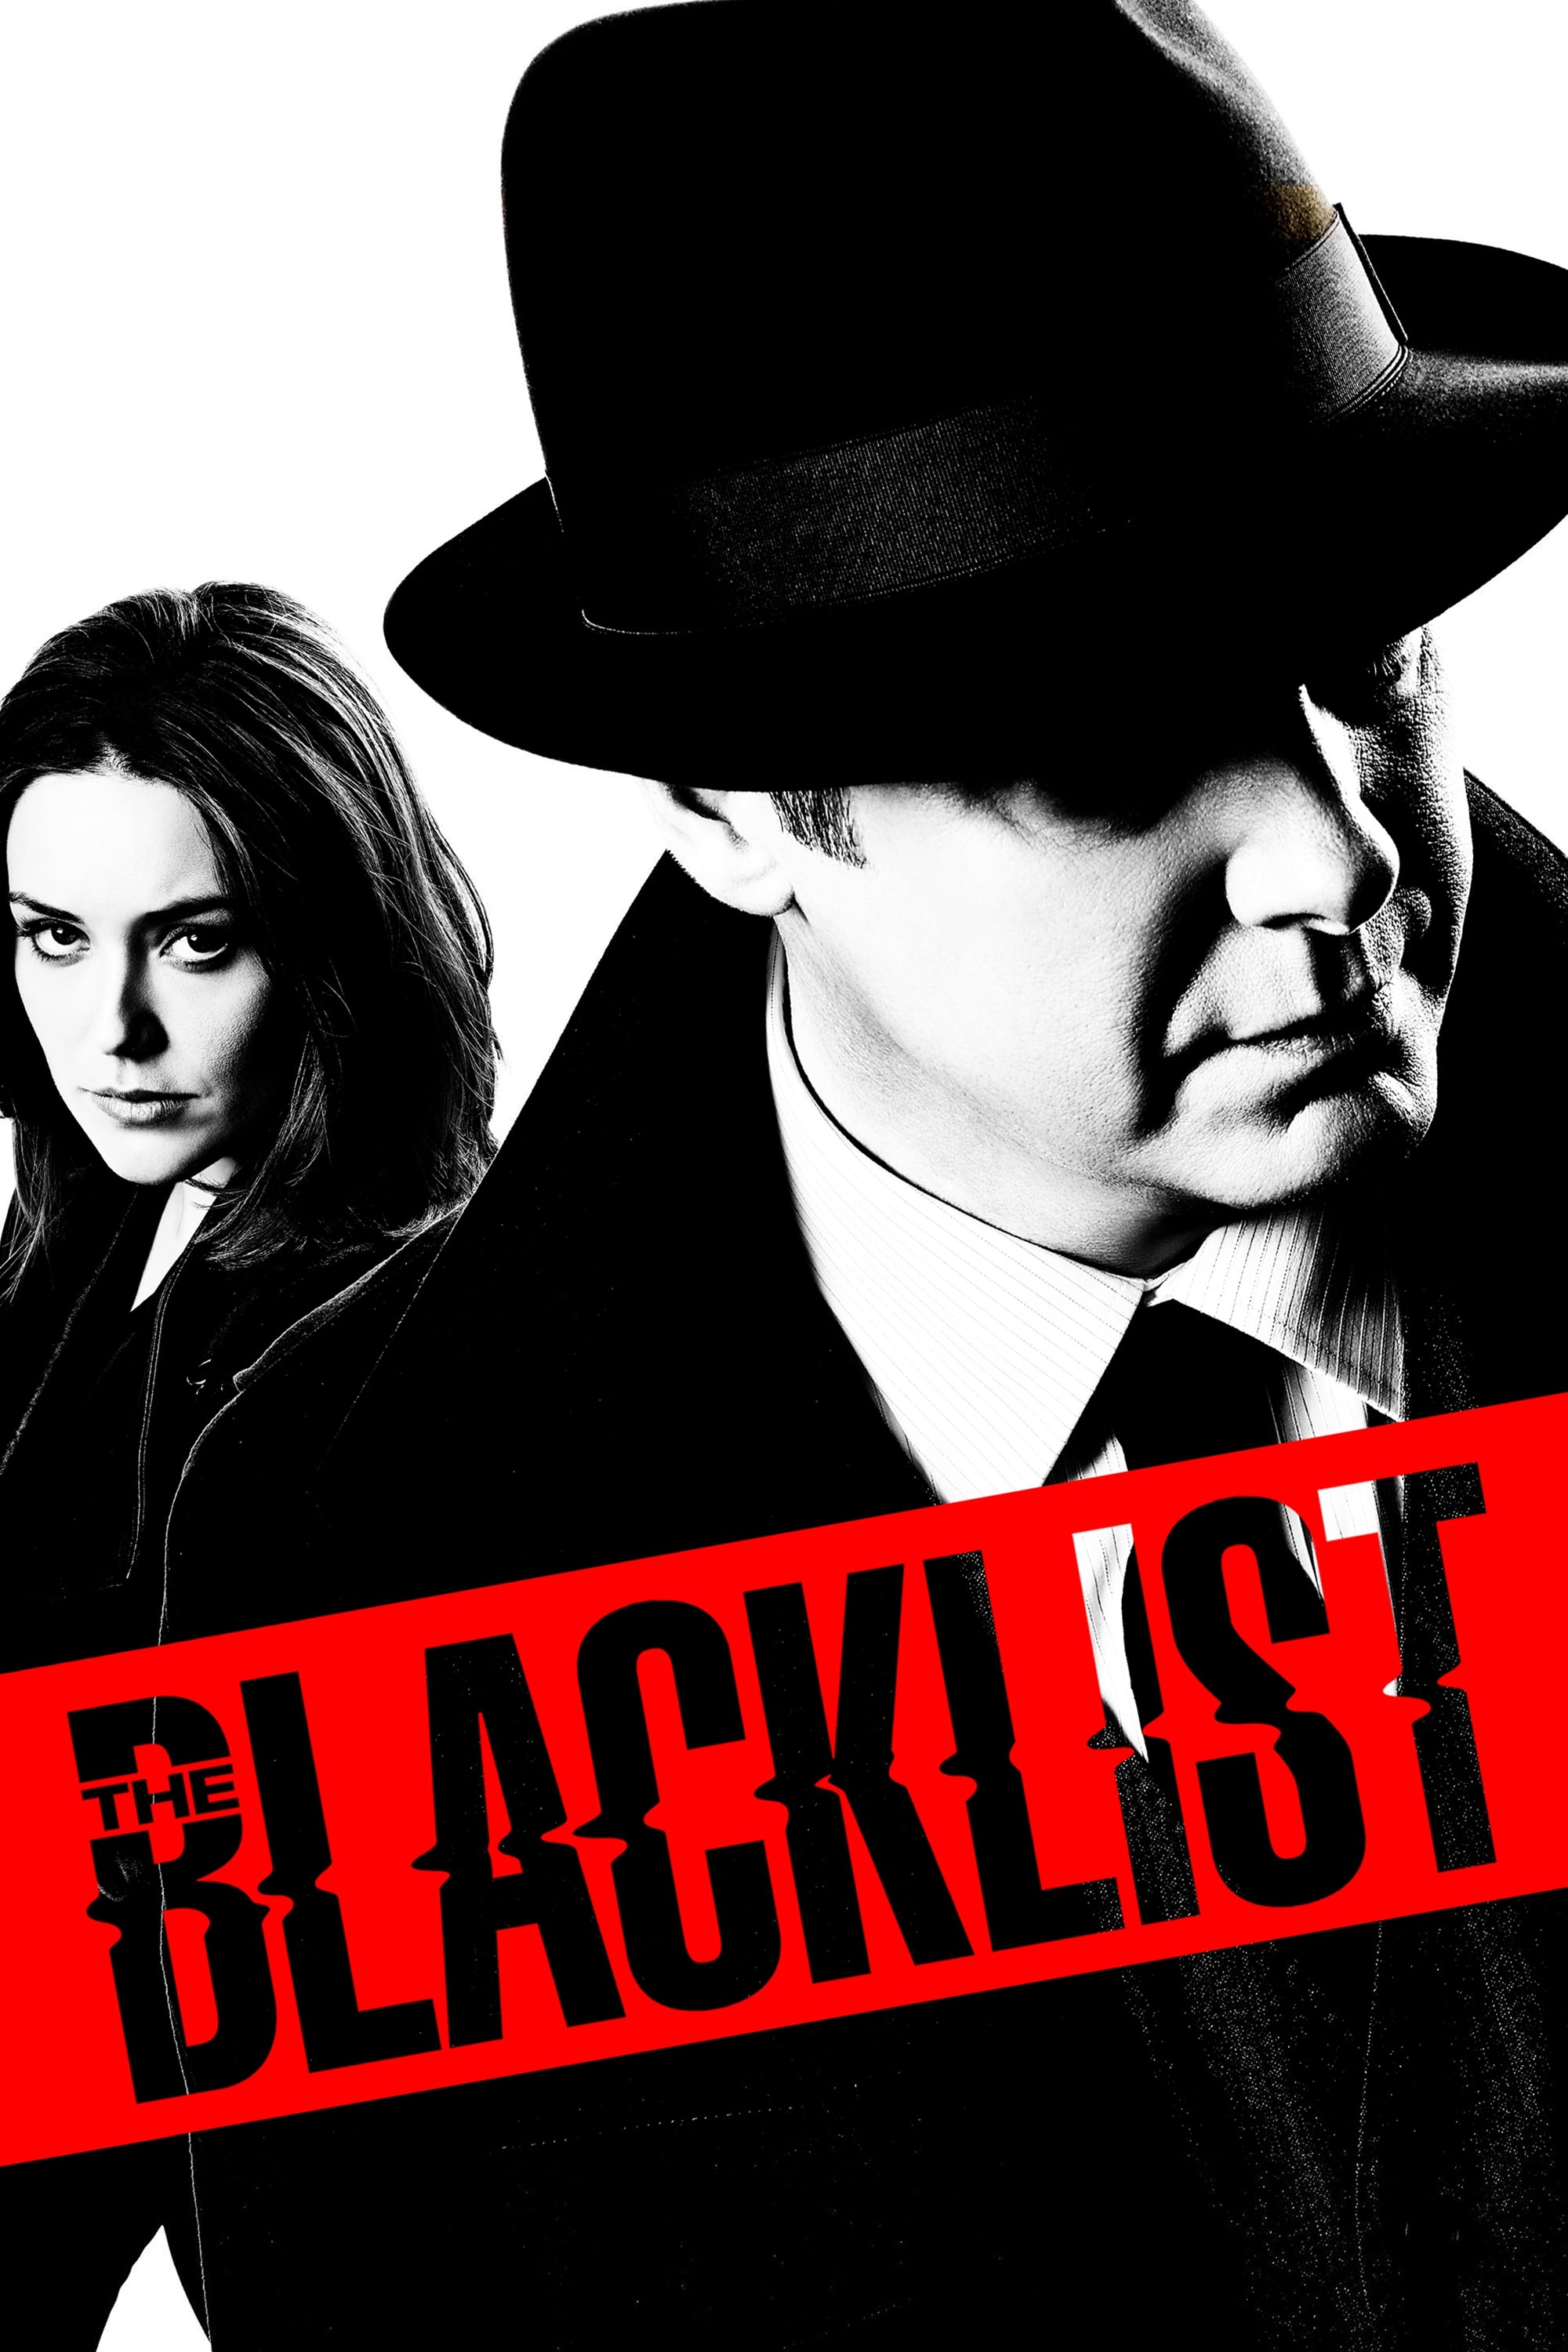 The Blacklist – Episode 9×18 Online Free